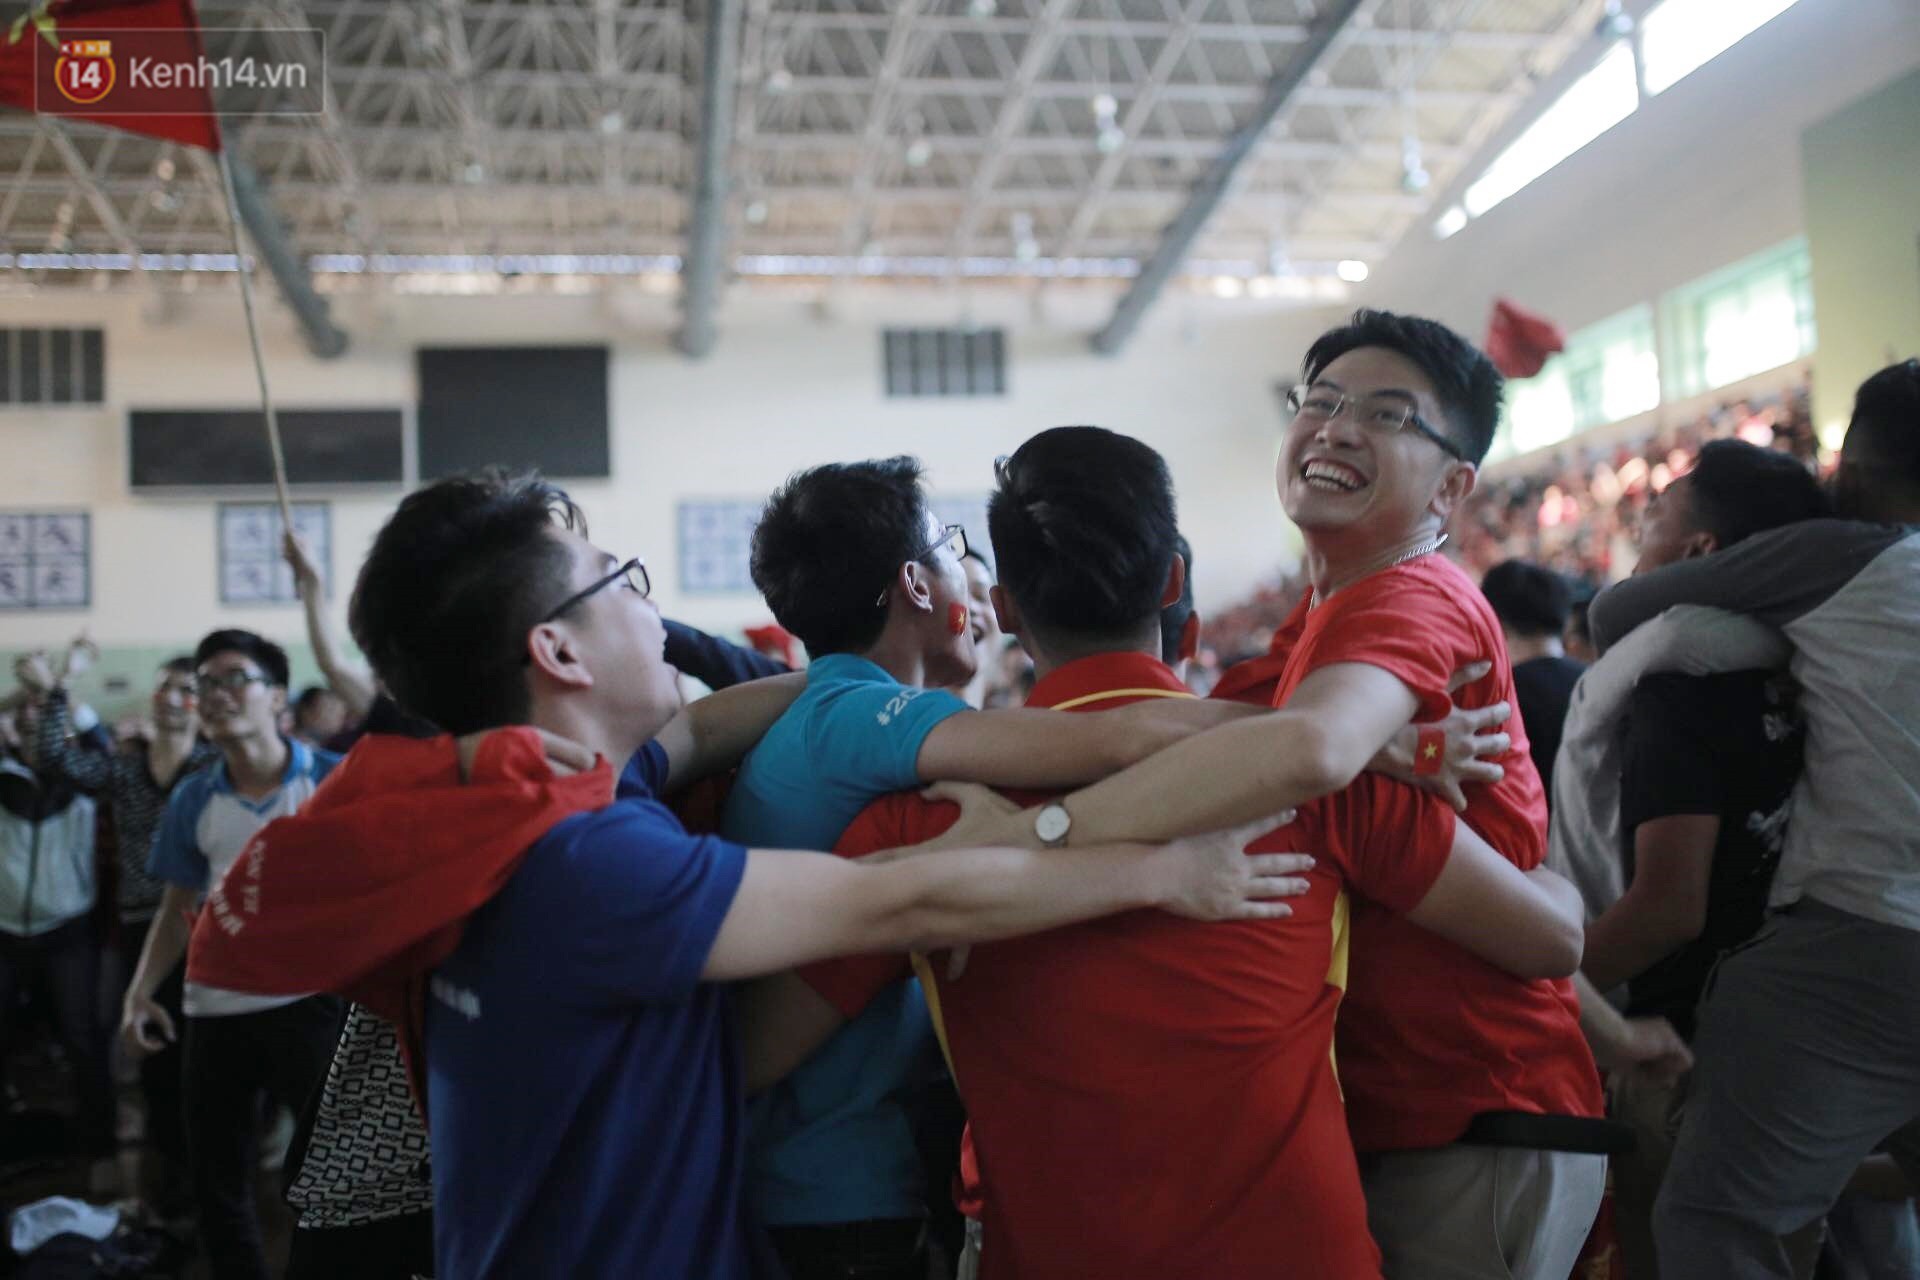 Chùm ảnh: Khoảnh khắc U23 Việt Nam gỡ hòa trong những phút cuối, hàng triệu người đã nắm tay, ôm nhau hạnh phúc nhường này - Ảnh 9.